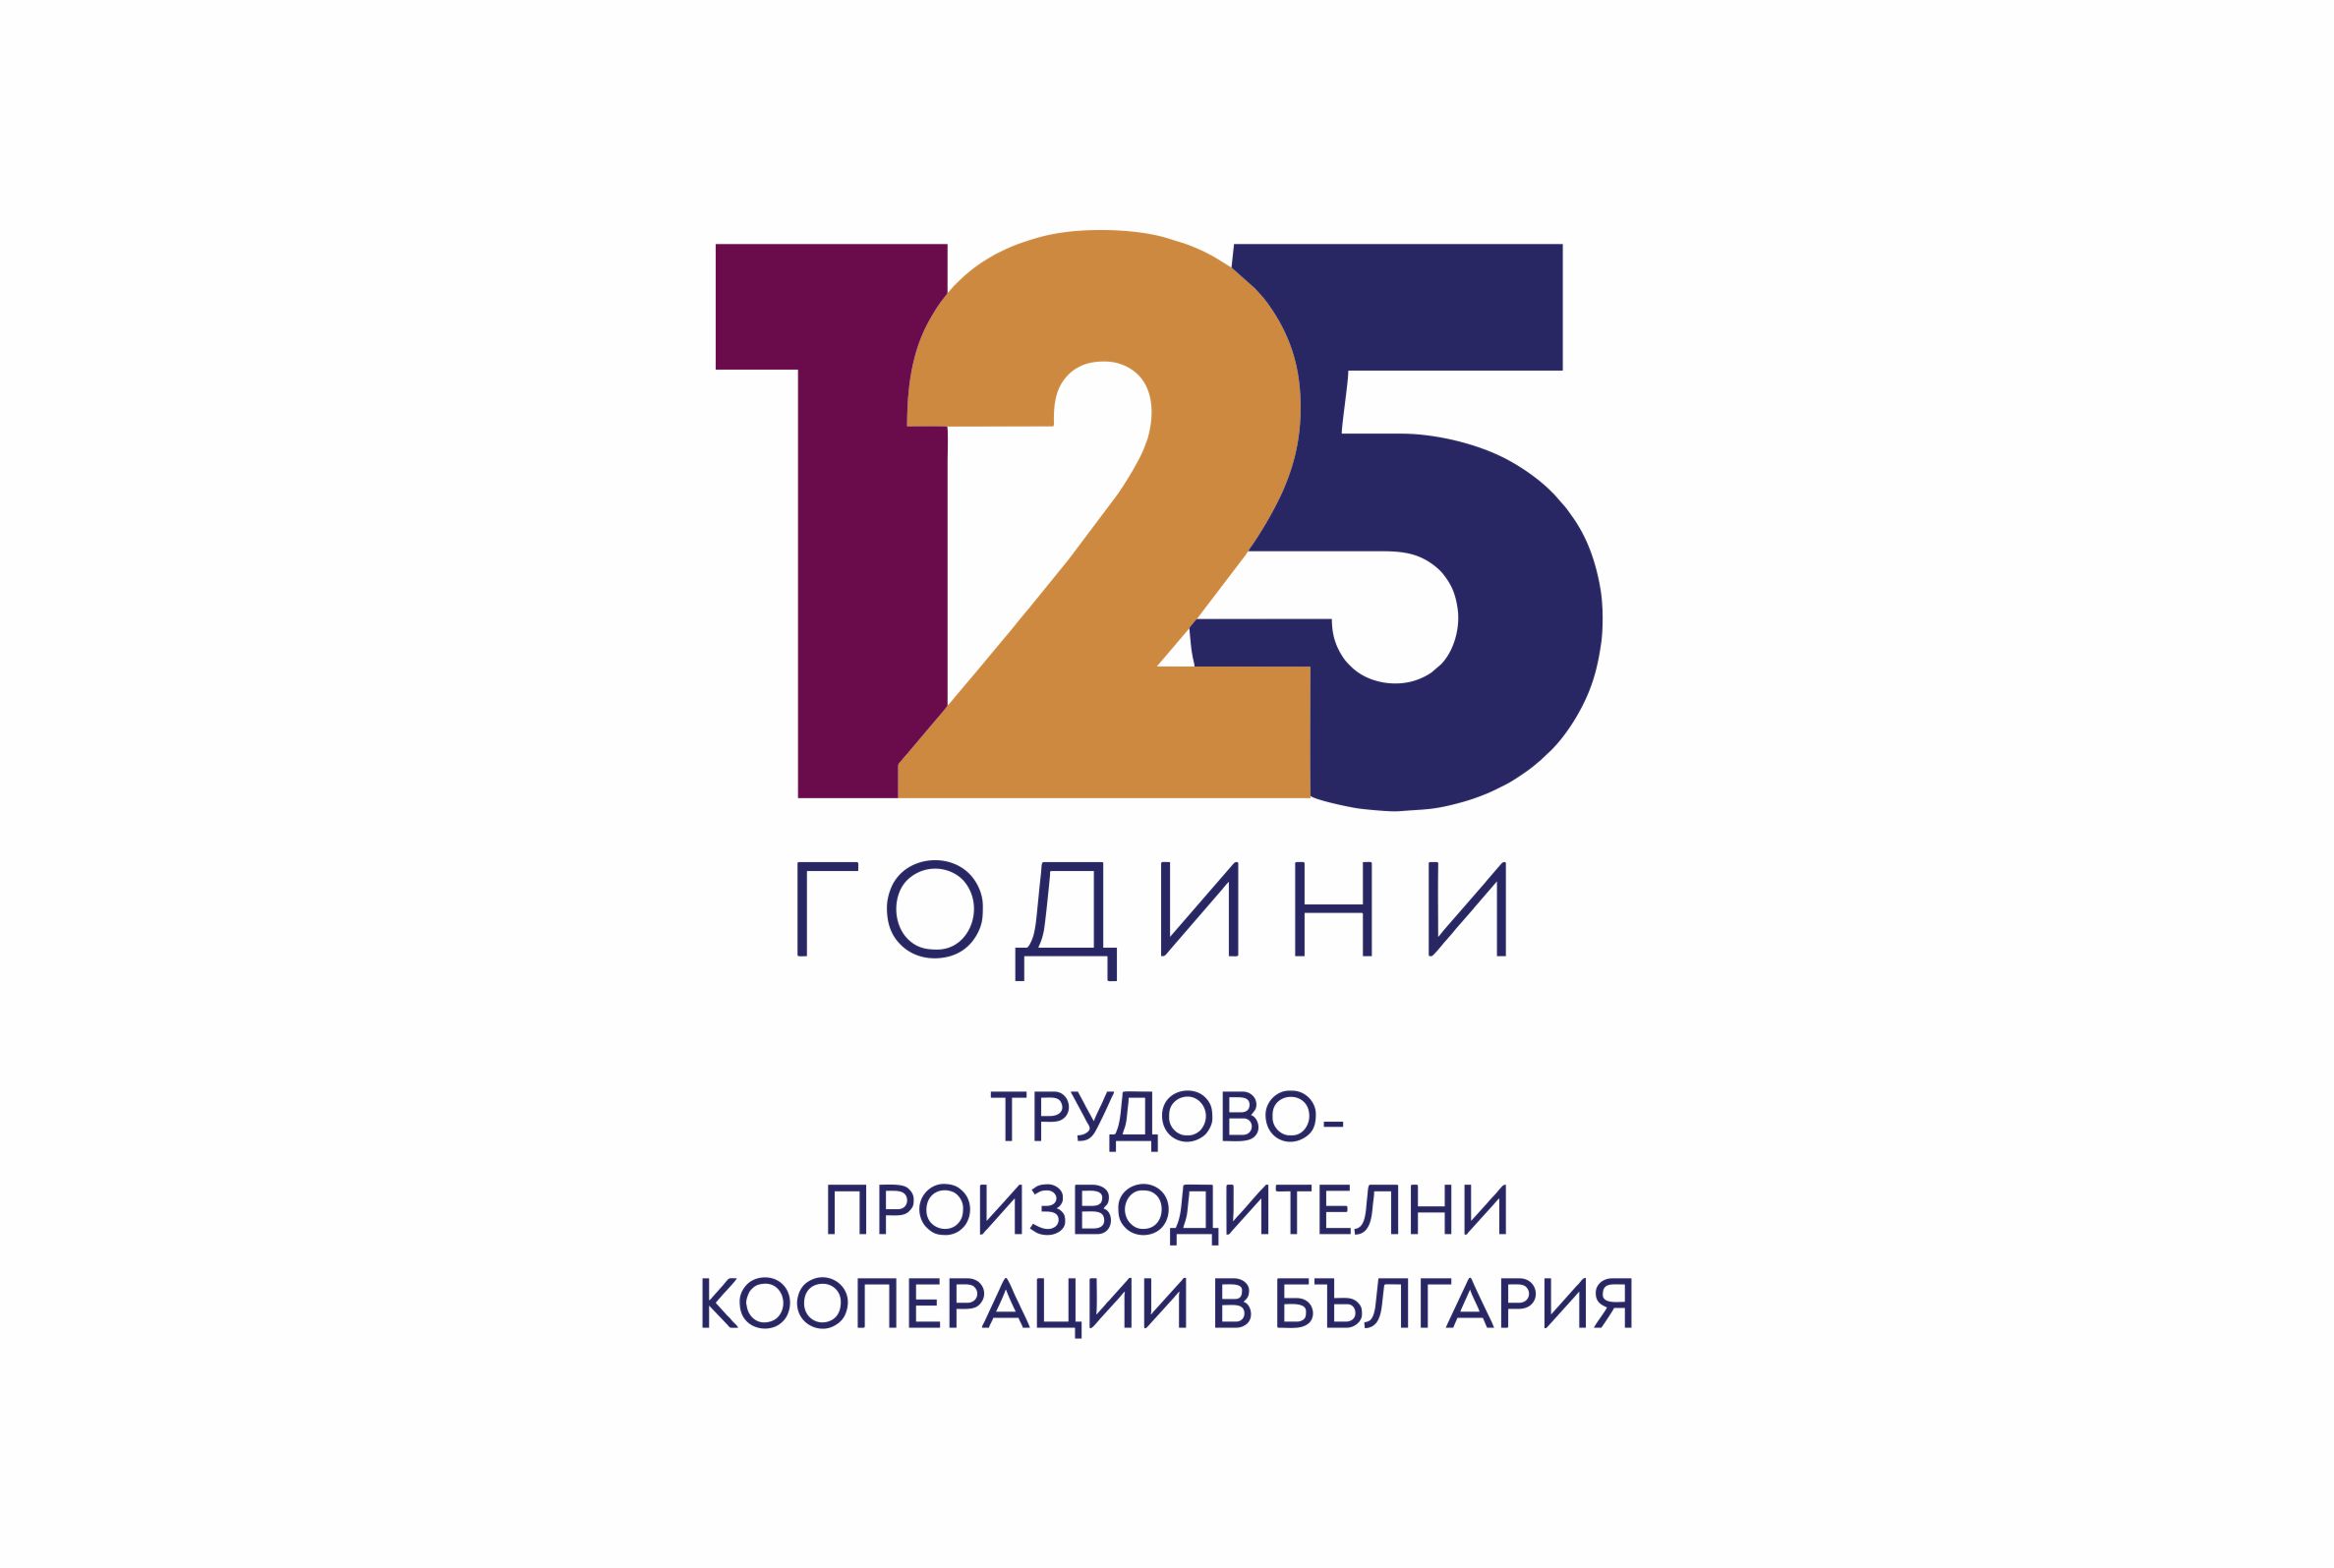 125 г. кооперативно движение на производствените кооперации в България